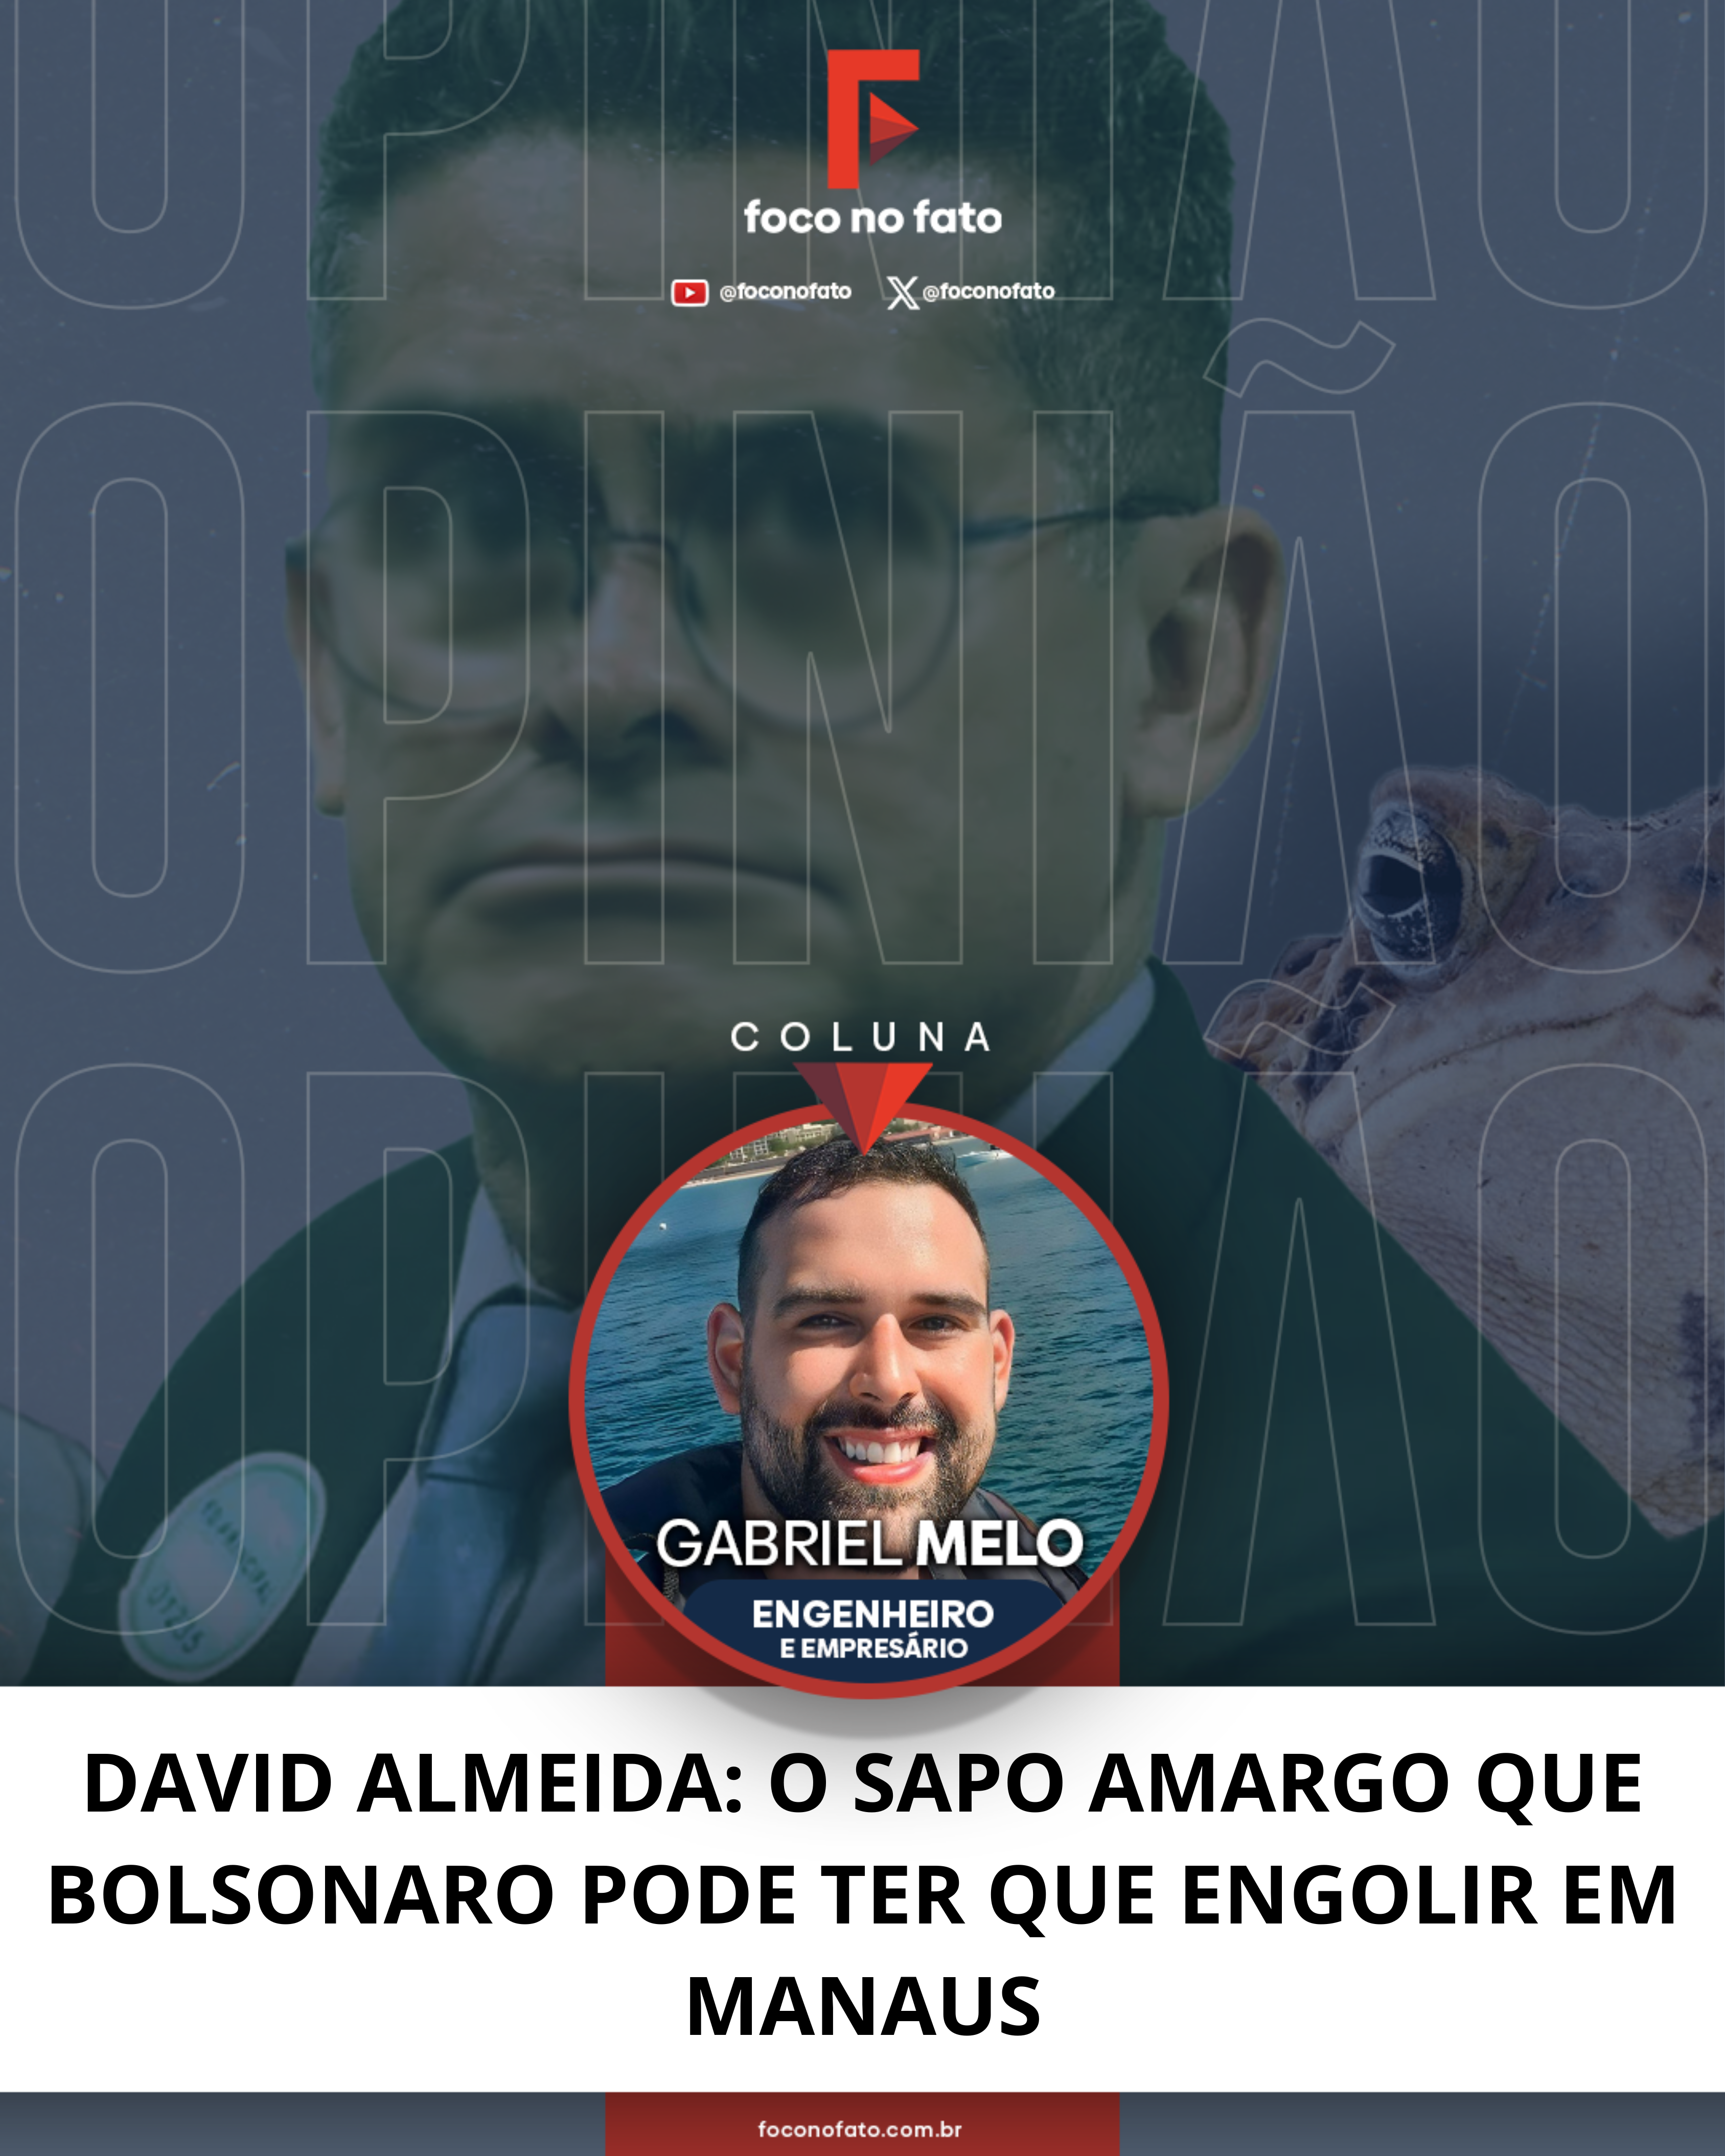 🔶 Coluna 53 de Gabriel F. Melo | DAVID ALMEIDA: O SAPO AMARGO QUE BOLSONARO PODE TER QUE ENGOLIR EM MANAUS